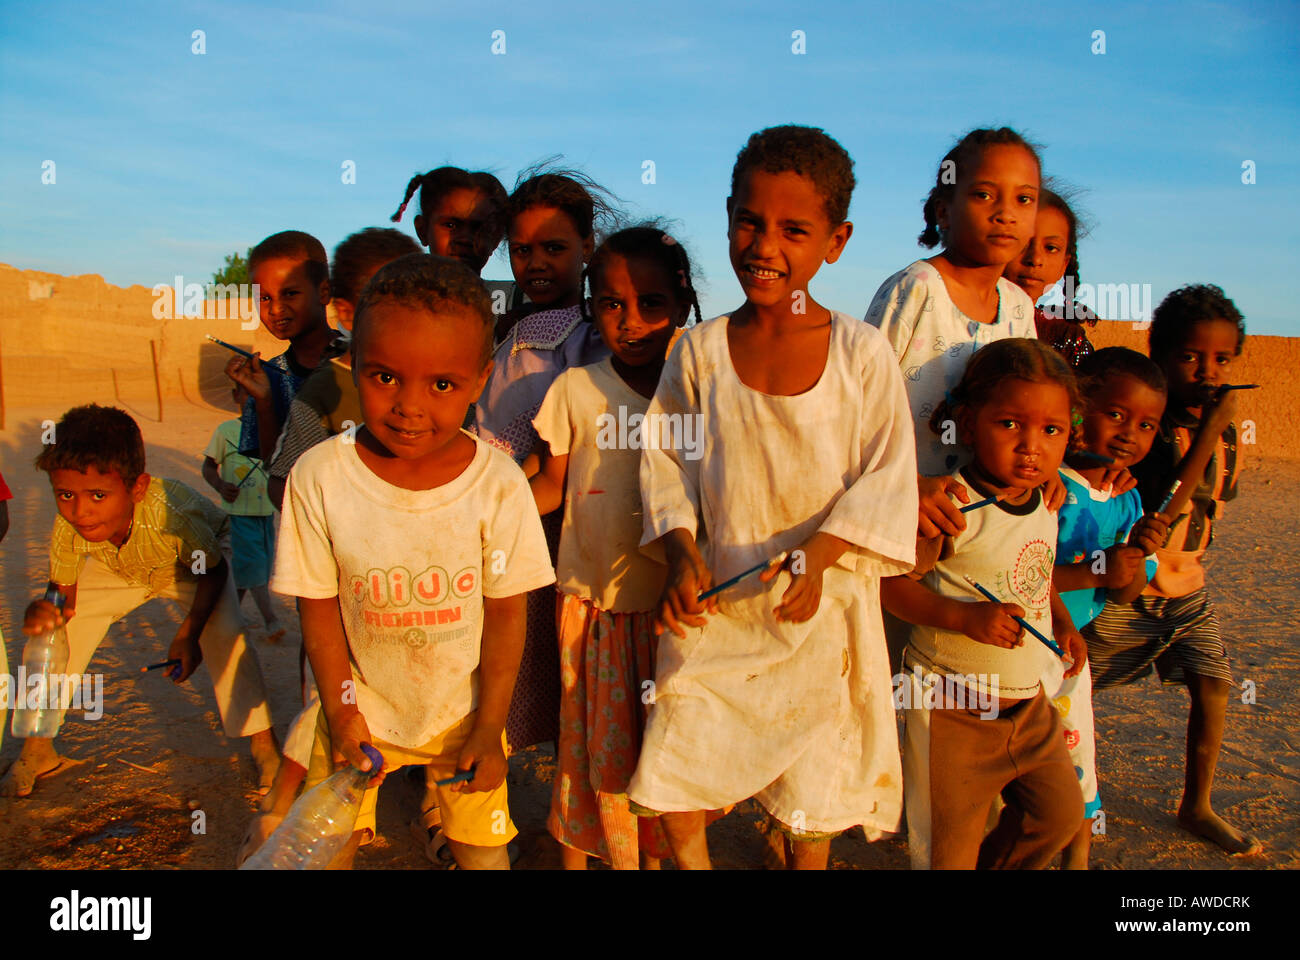 Children, El Kurru, Sudan, Africa Stock Photo